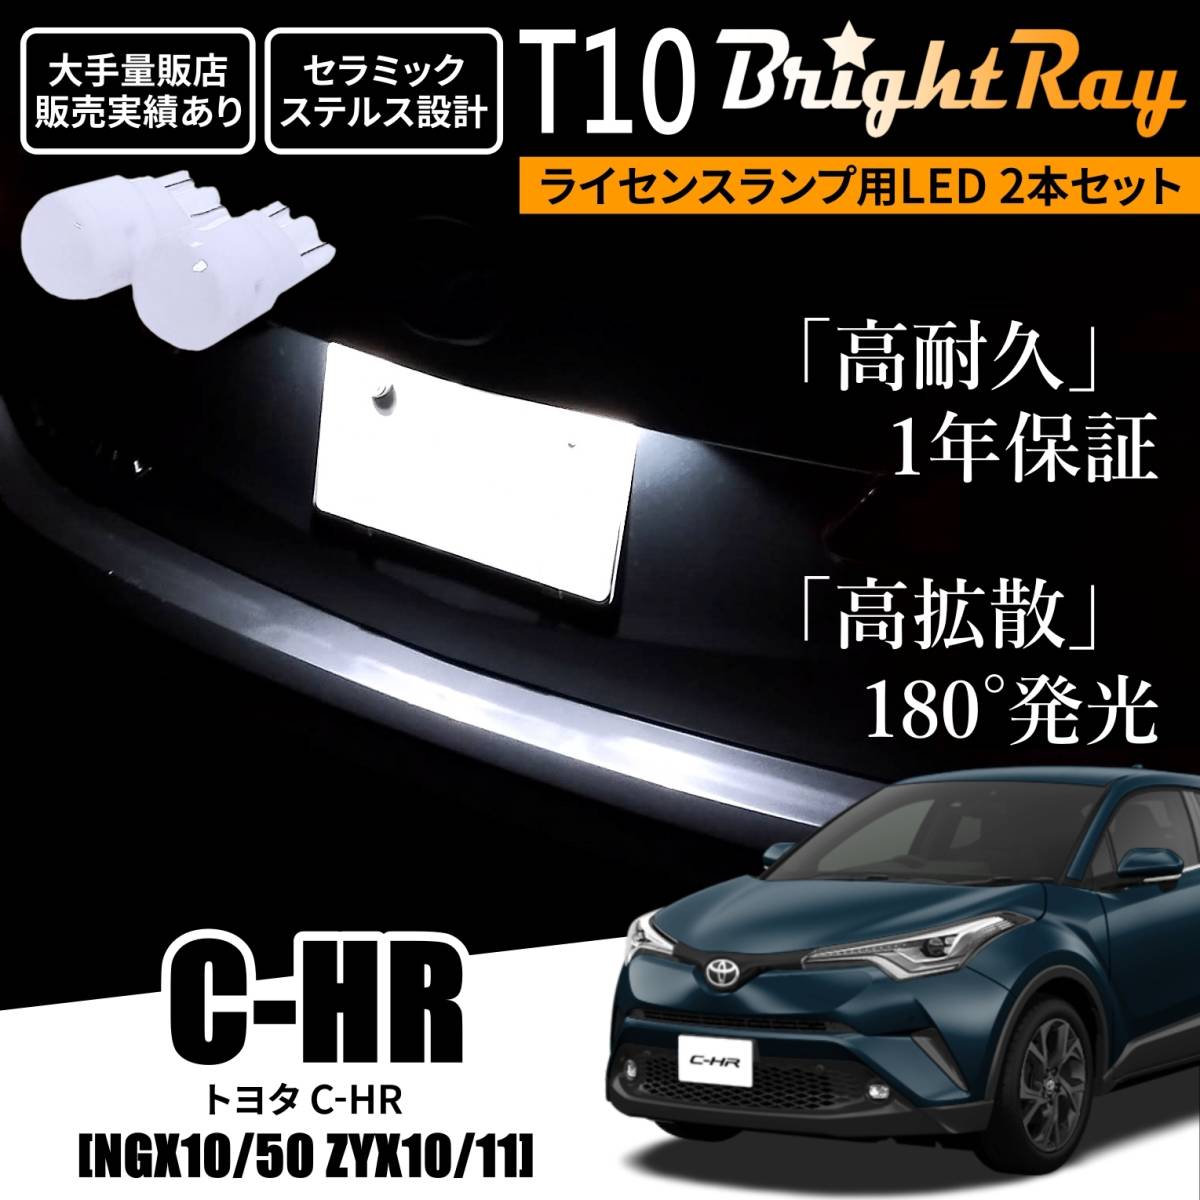 送料無料 トヨタ C-HR NGX10 NGX50 ZYX10 ZYX11 BrightRay T10 LED バルブ 1年保証 ナンバー灯 ライセンスランプ ウェッジ球 ホワイト CHR _画像1